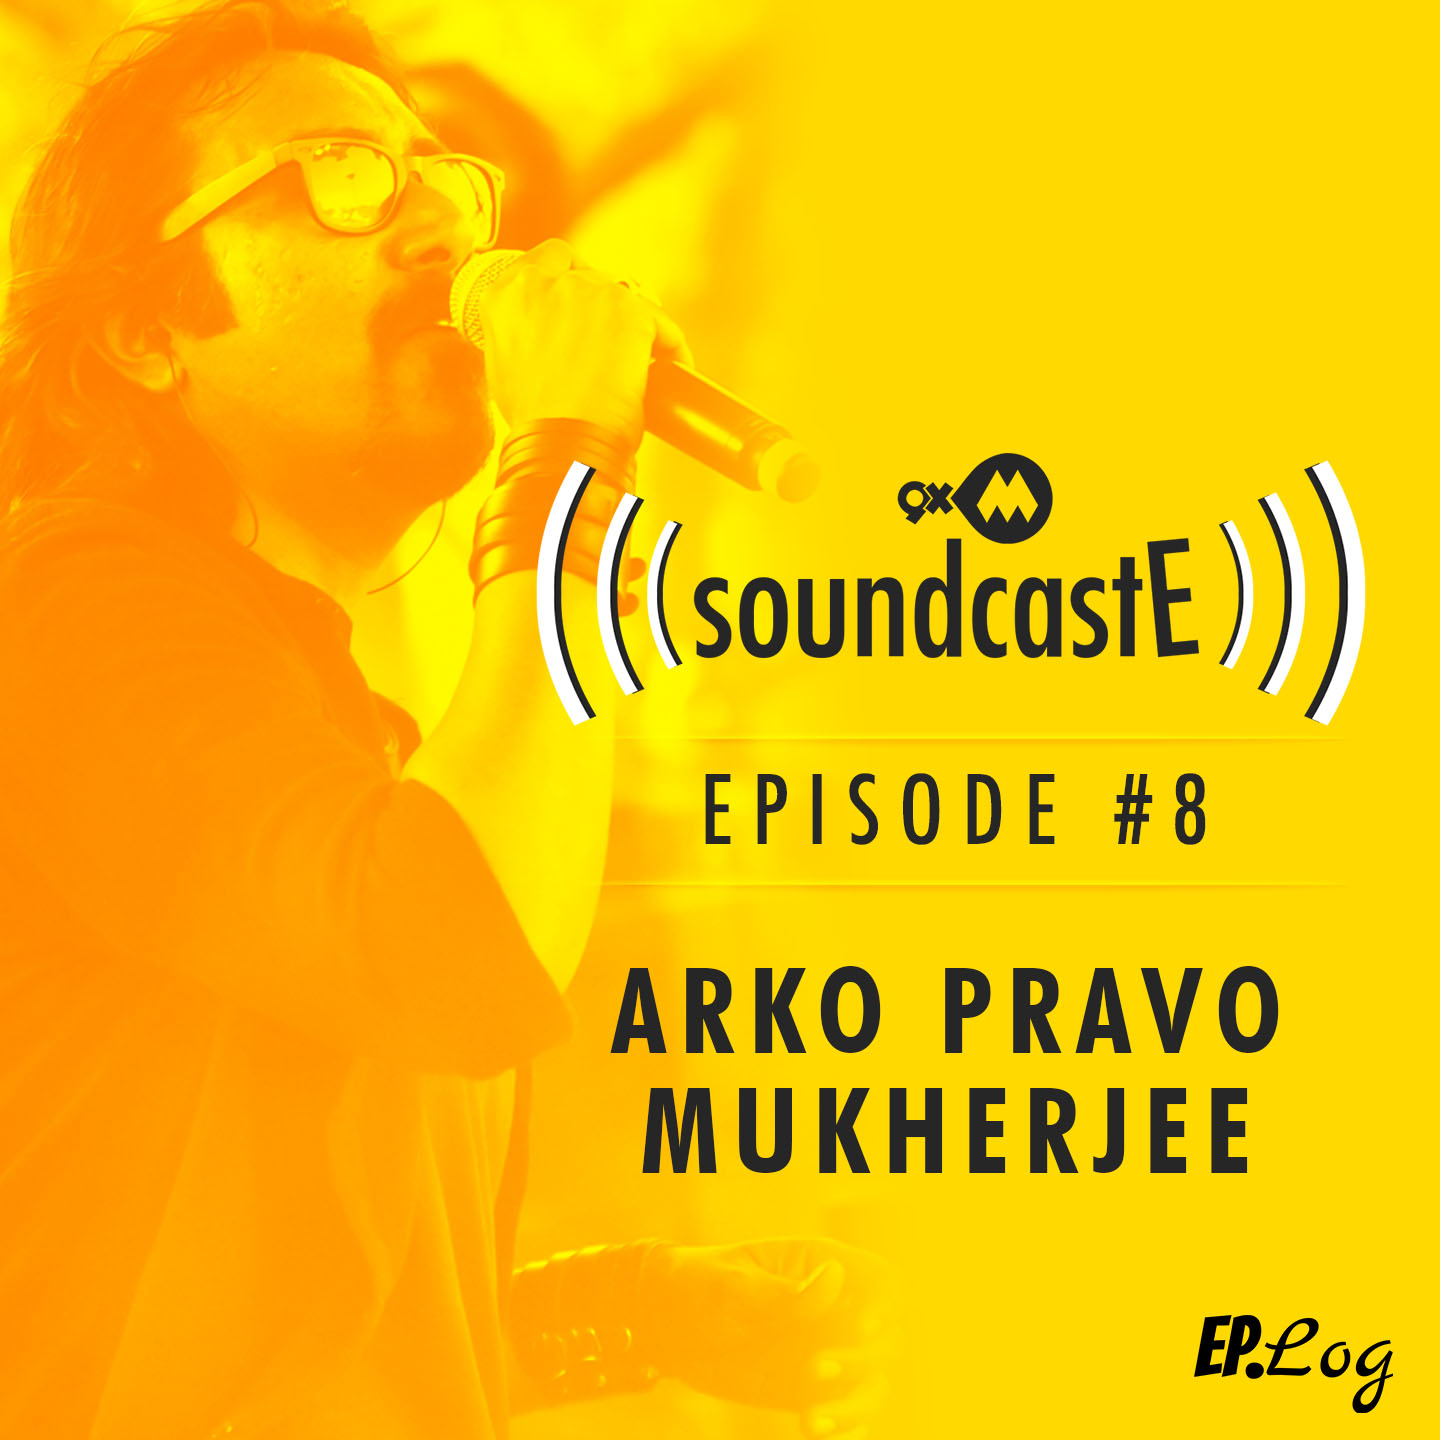 Ep. 08: 9XM SoundcastE with Arko Pravo Mukherjee